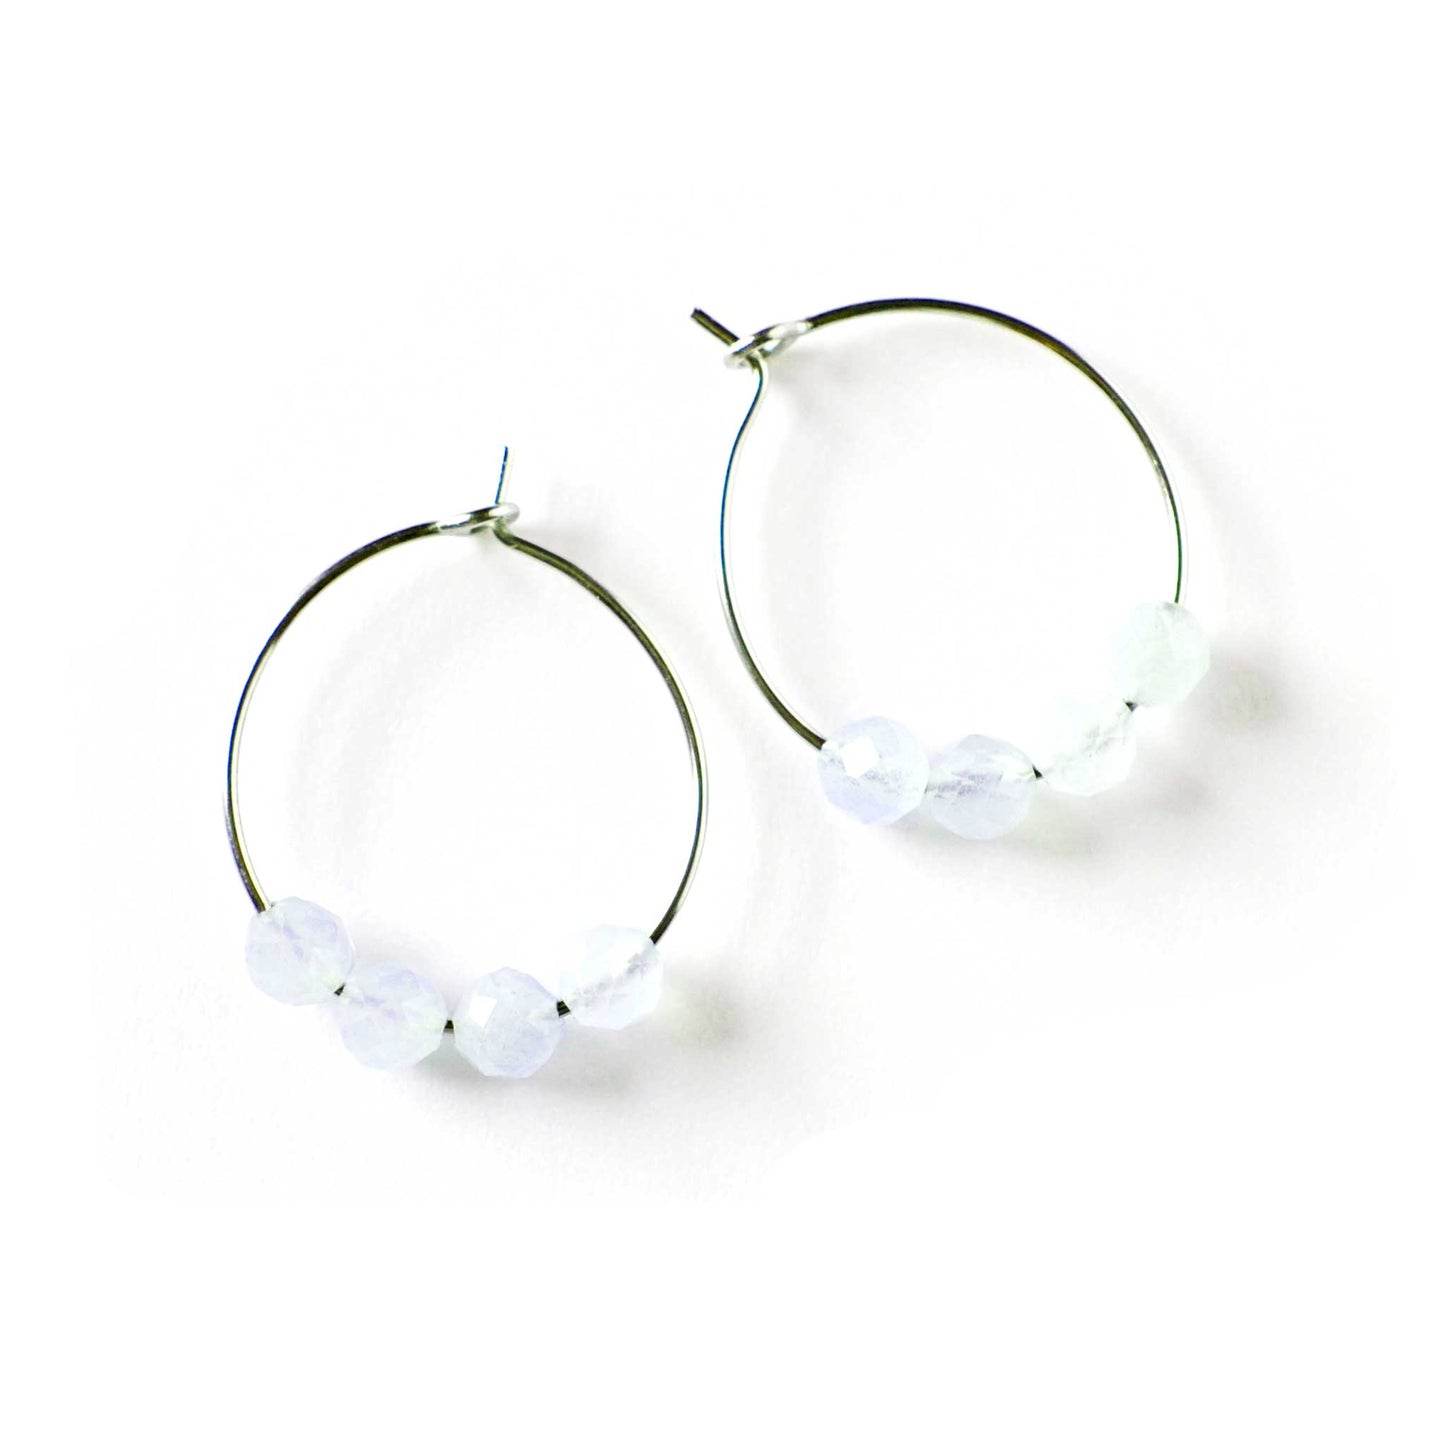 Pair of pale blue Aquamarine hoop earrings on white background